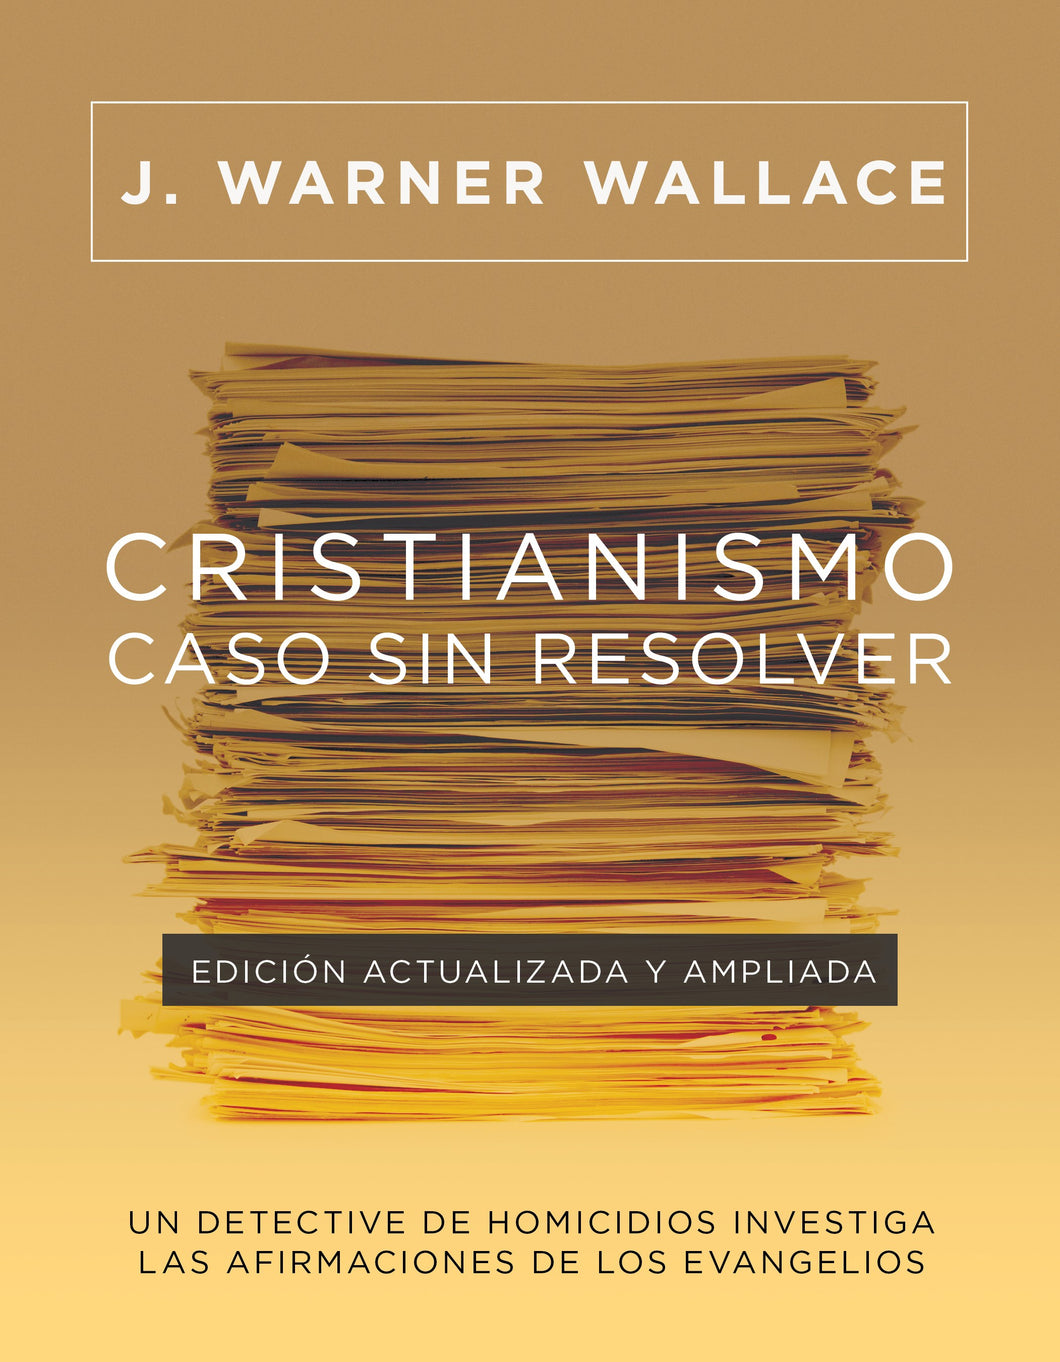 Spanish-Cold-Case Christianity  Revised (Cristianismo  caso sin resolver  Edicion actualizada y ampliada)